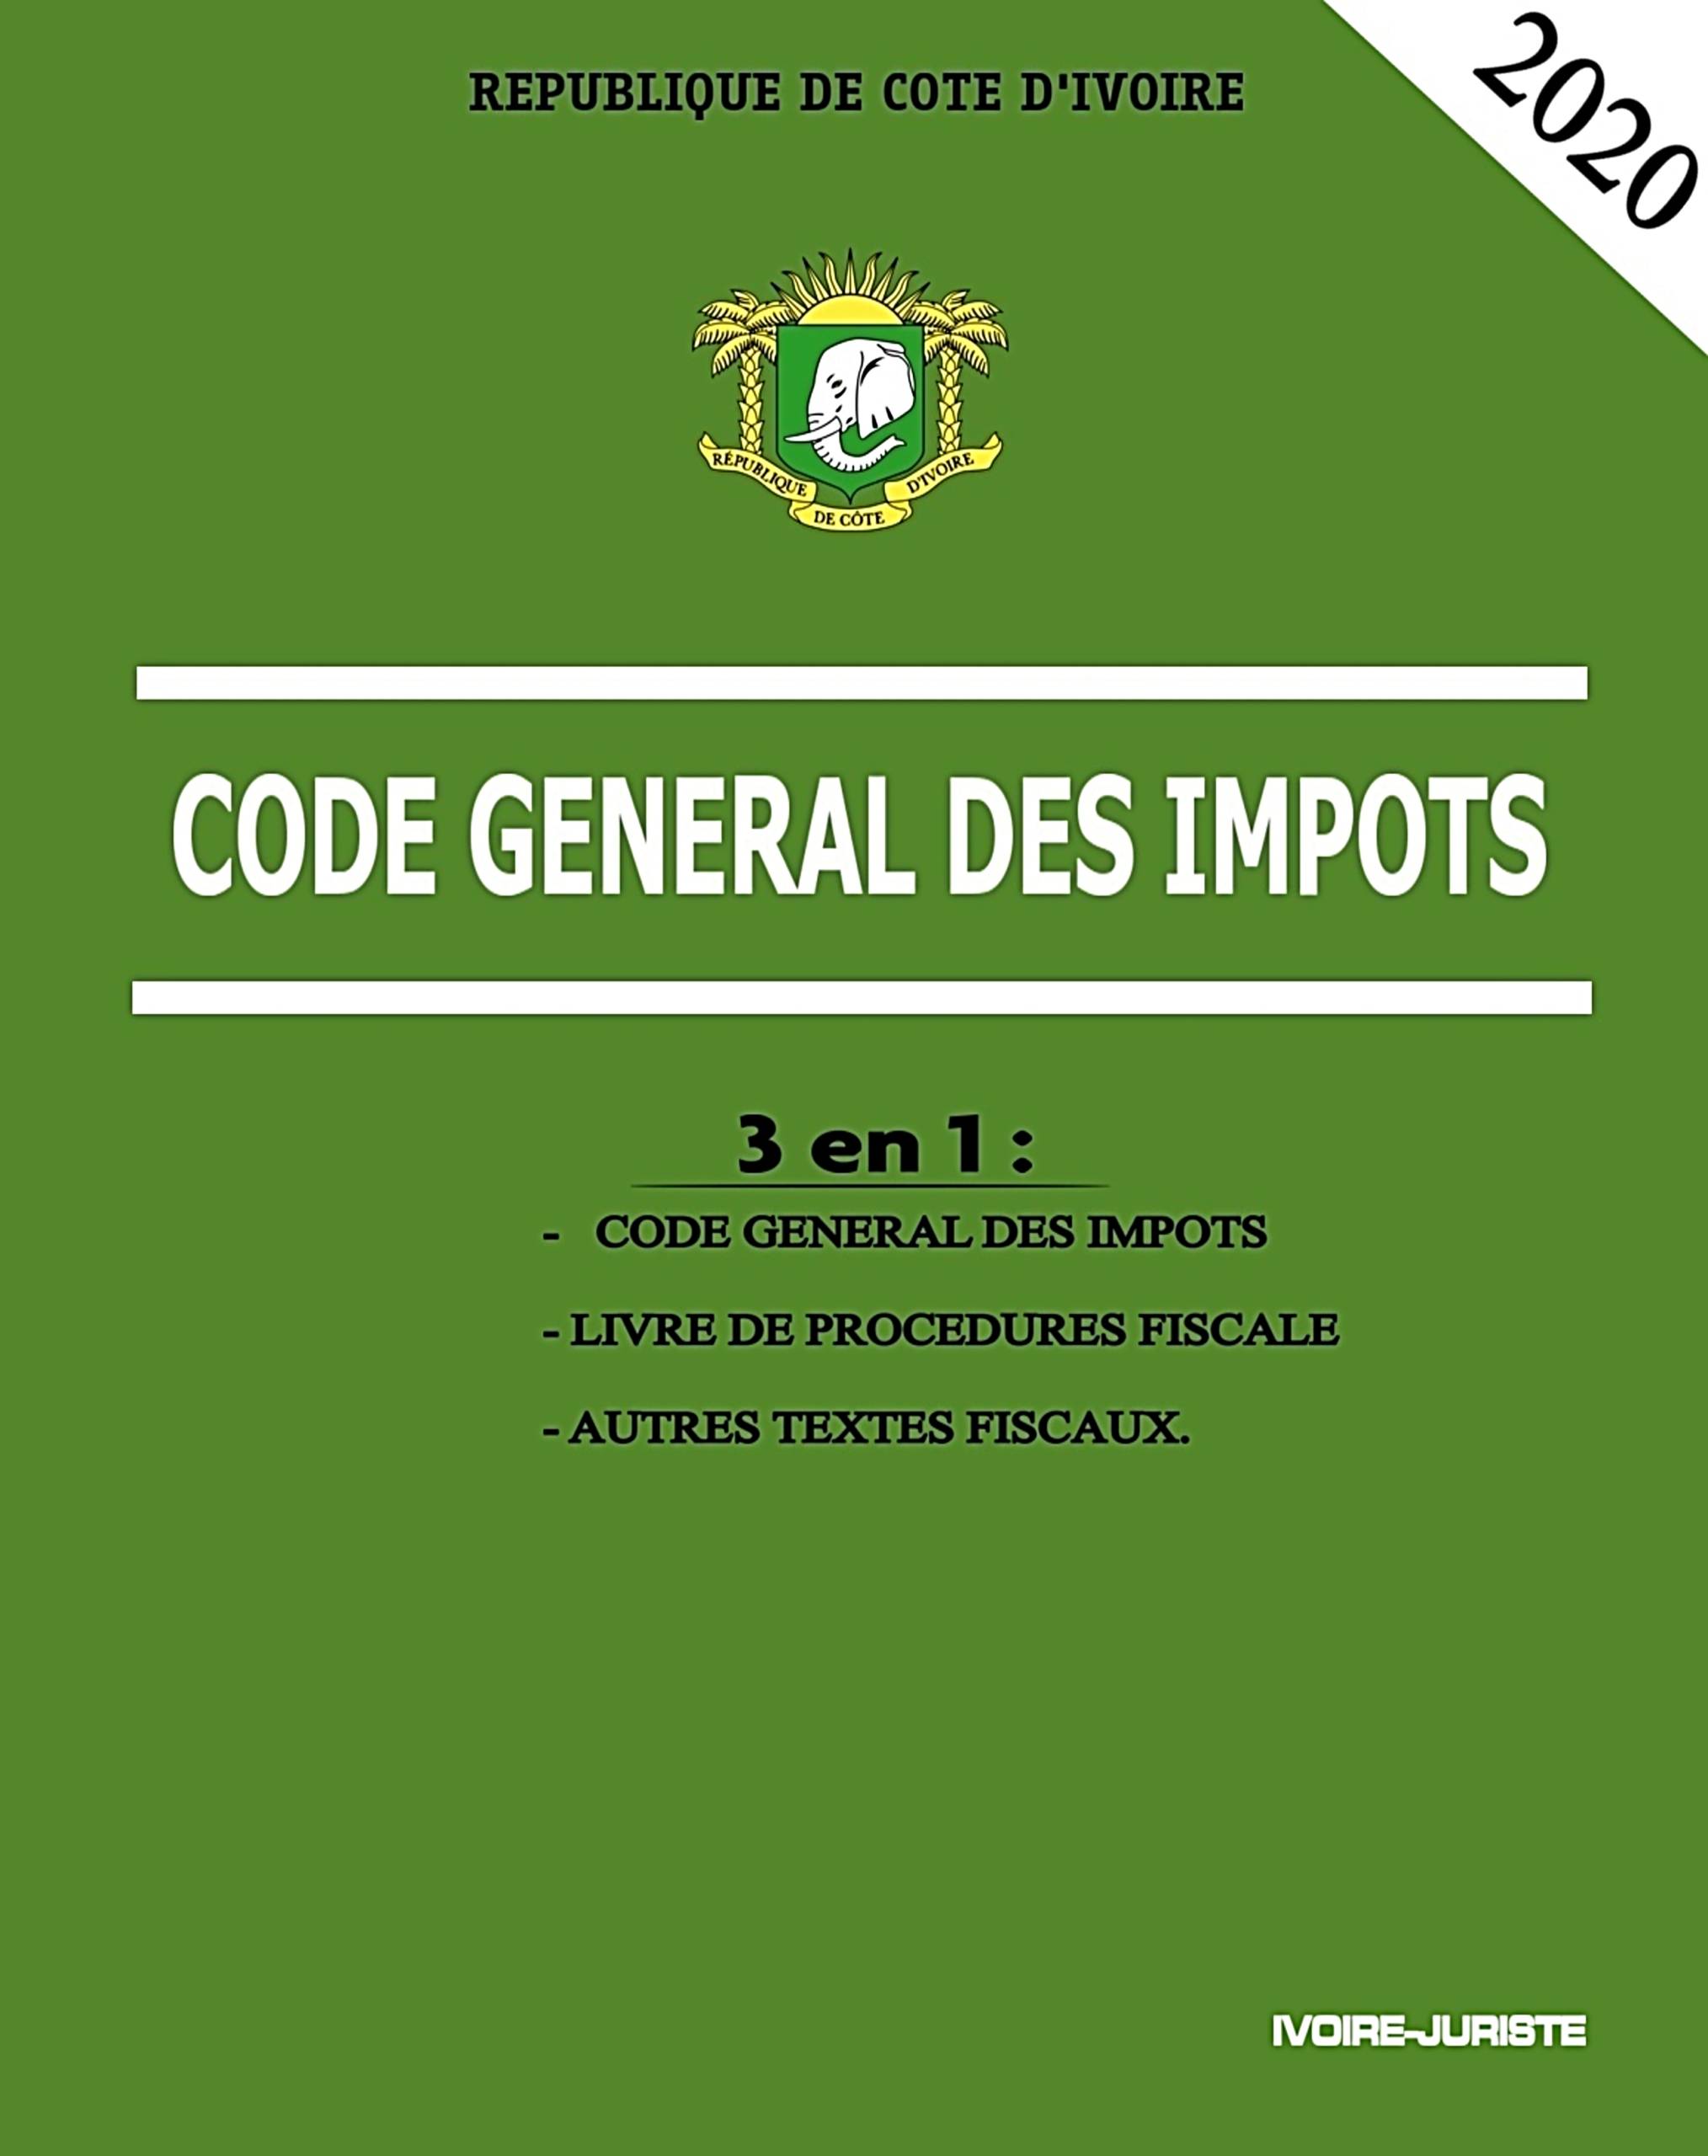 code général des impôts ivoirien